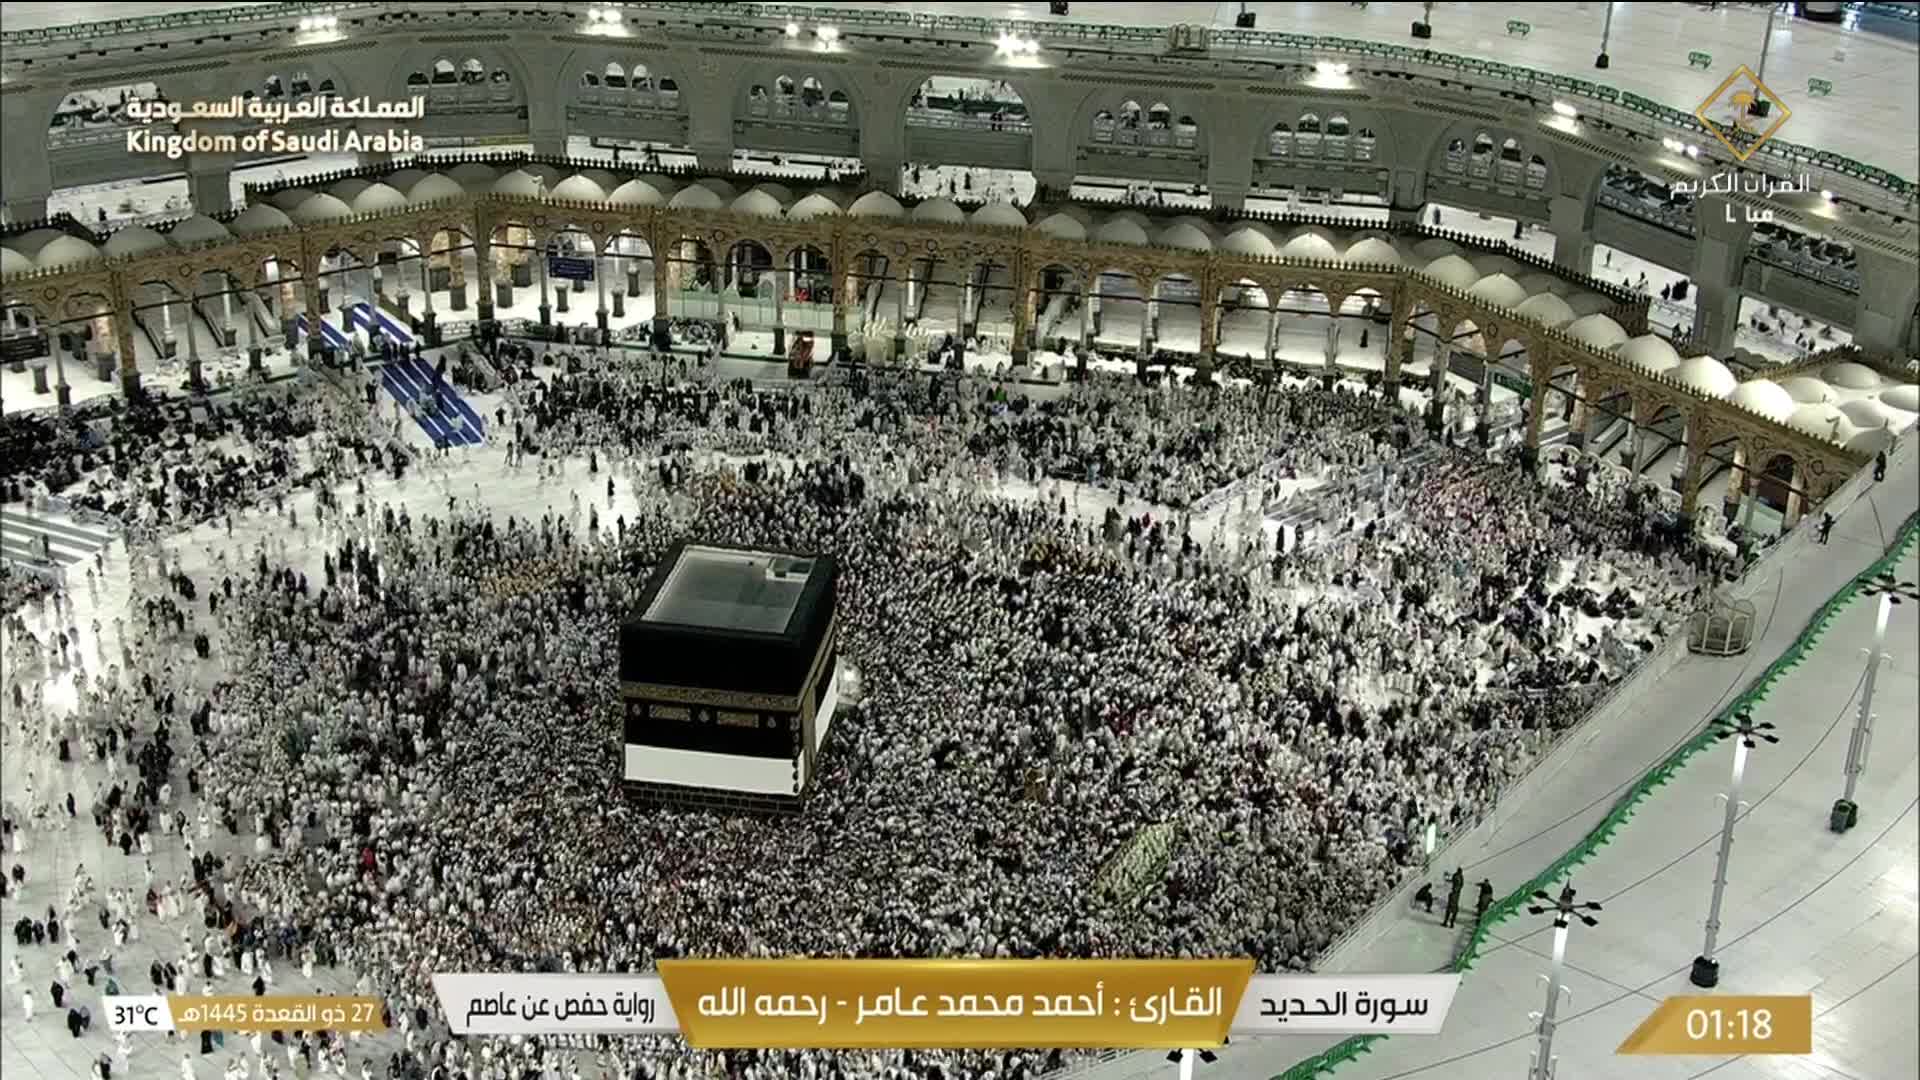 Mecca Thu. 01:36